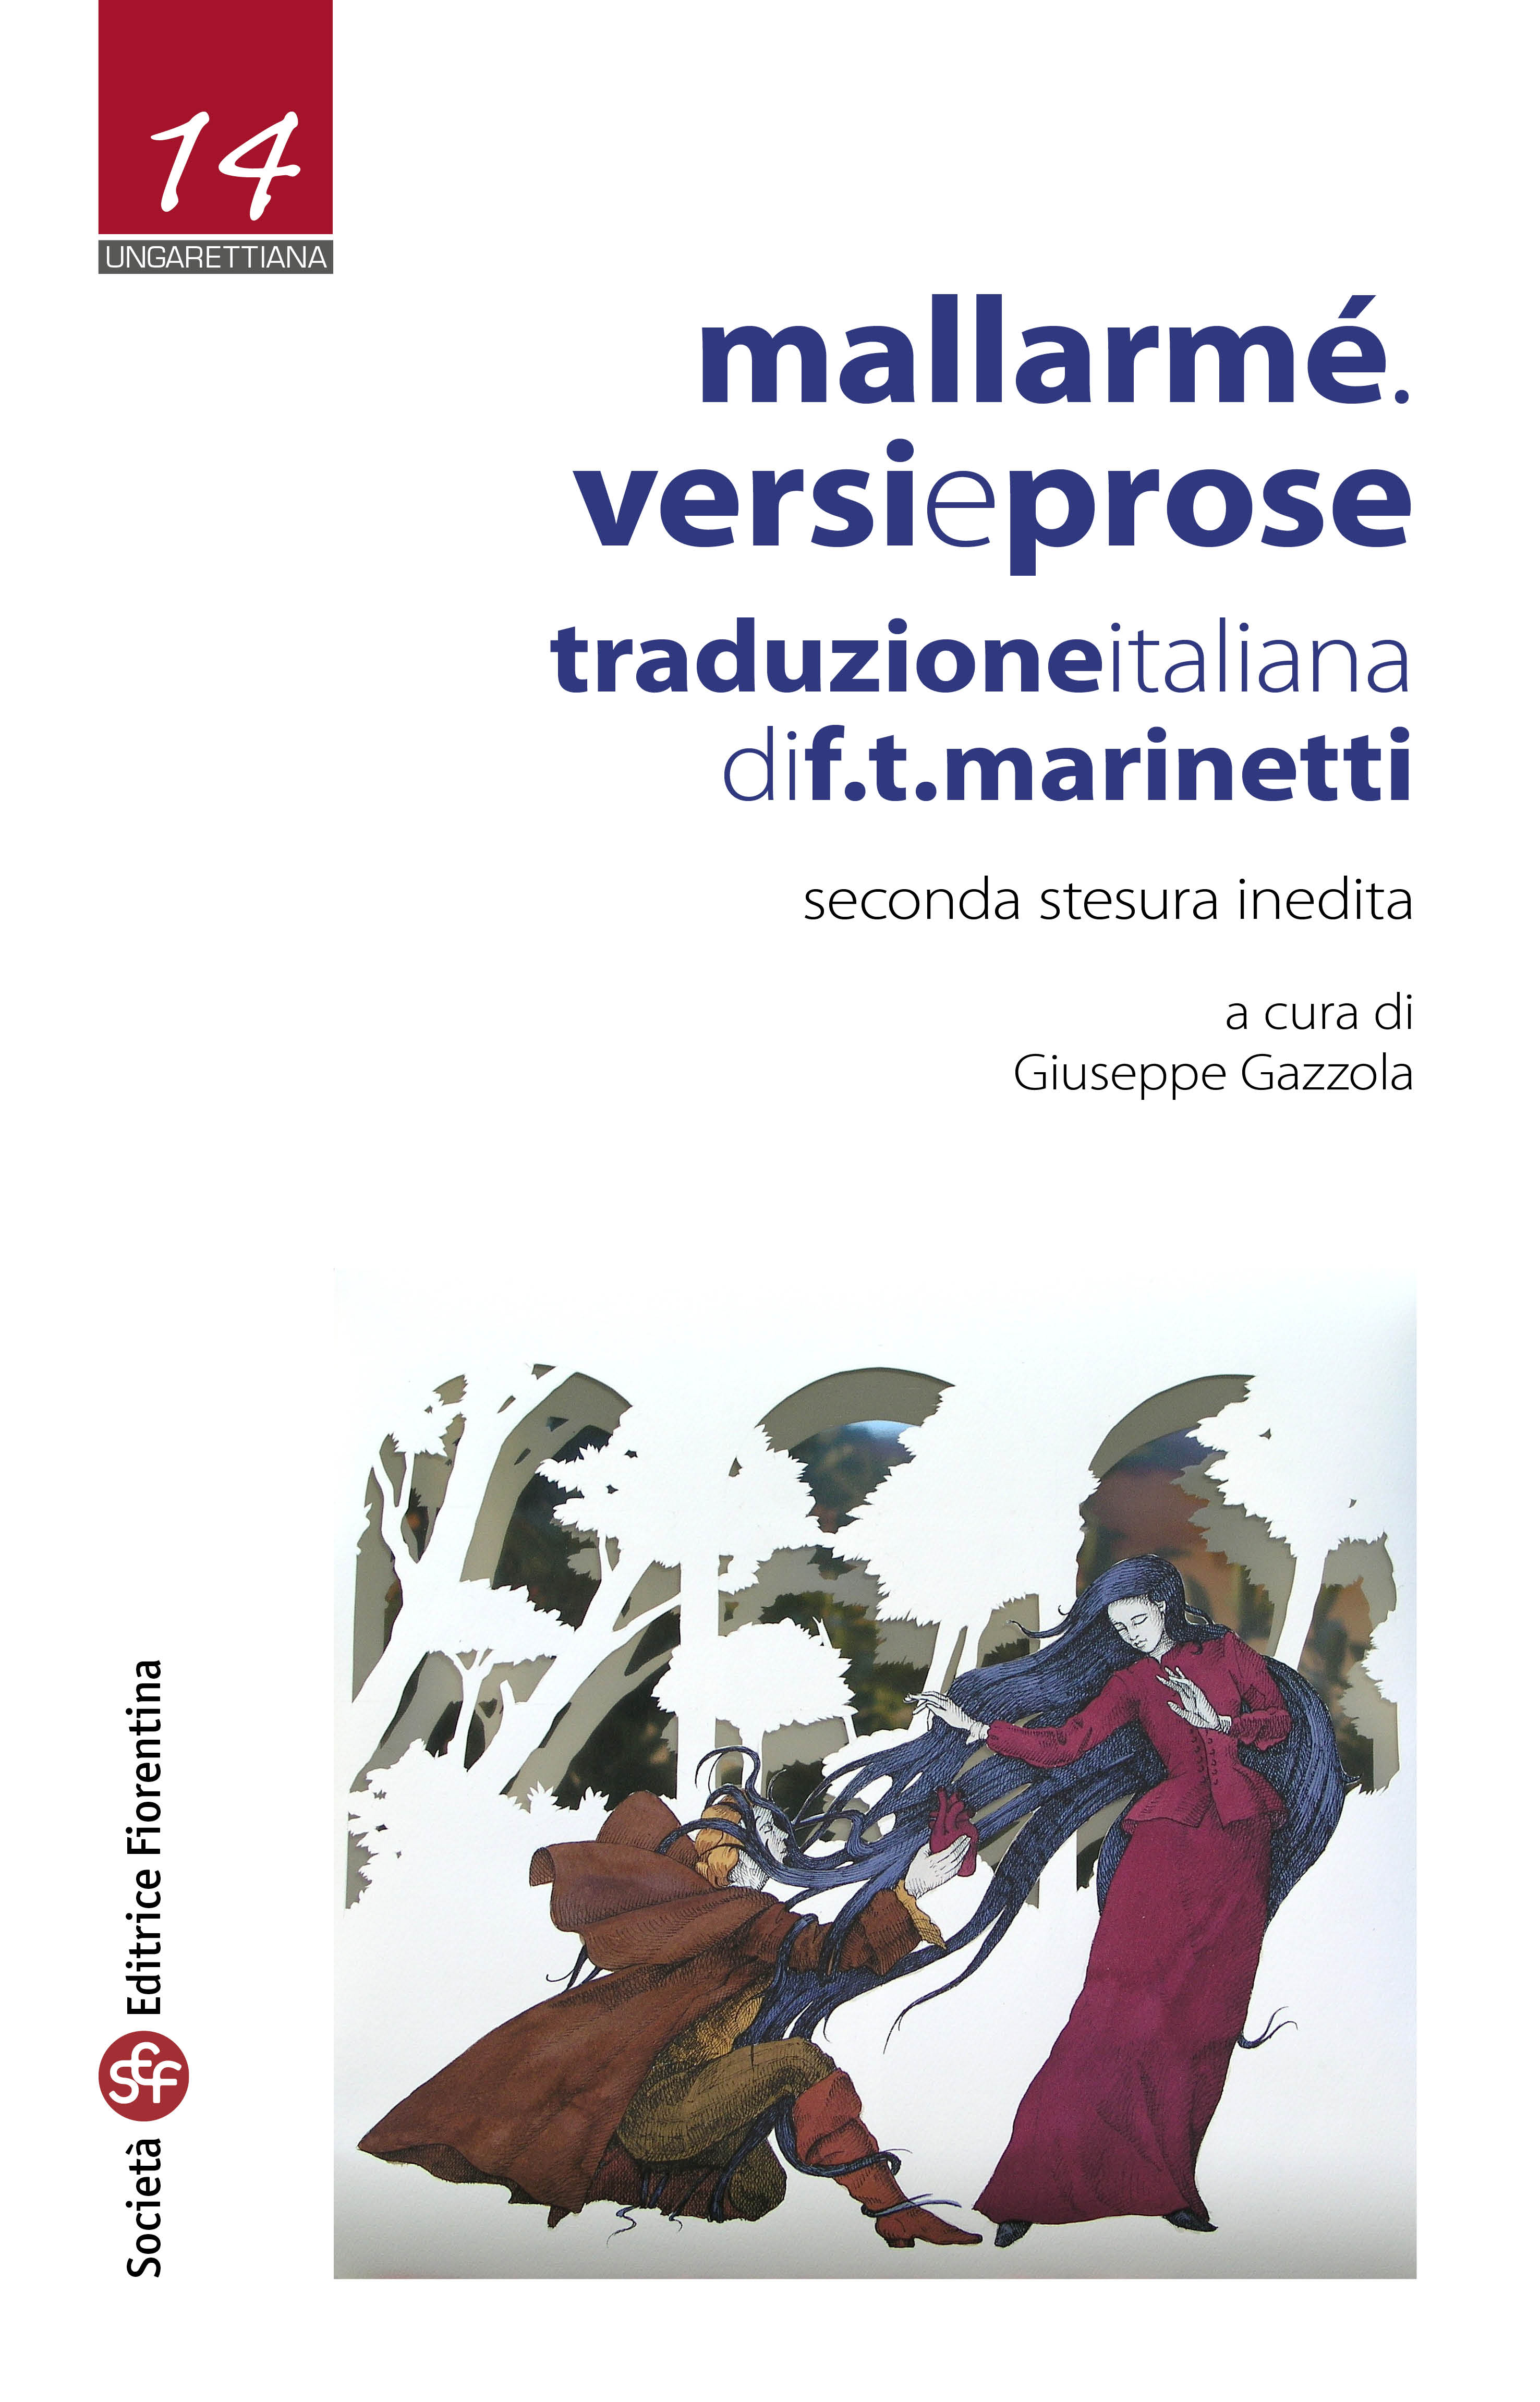 E-book, Versi e prose, Società editrice fiorentina